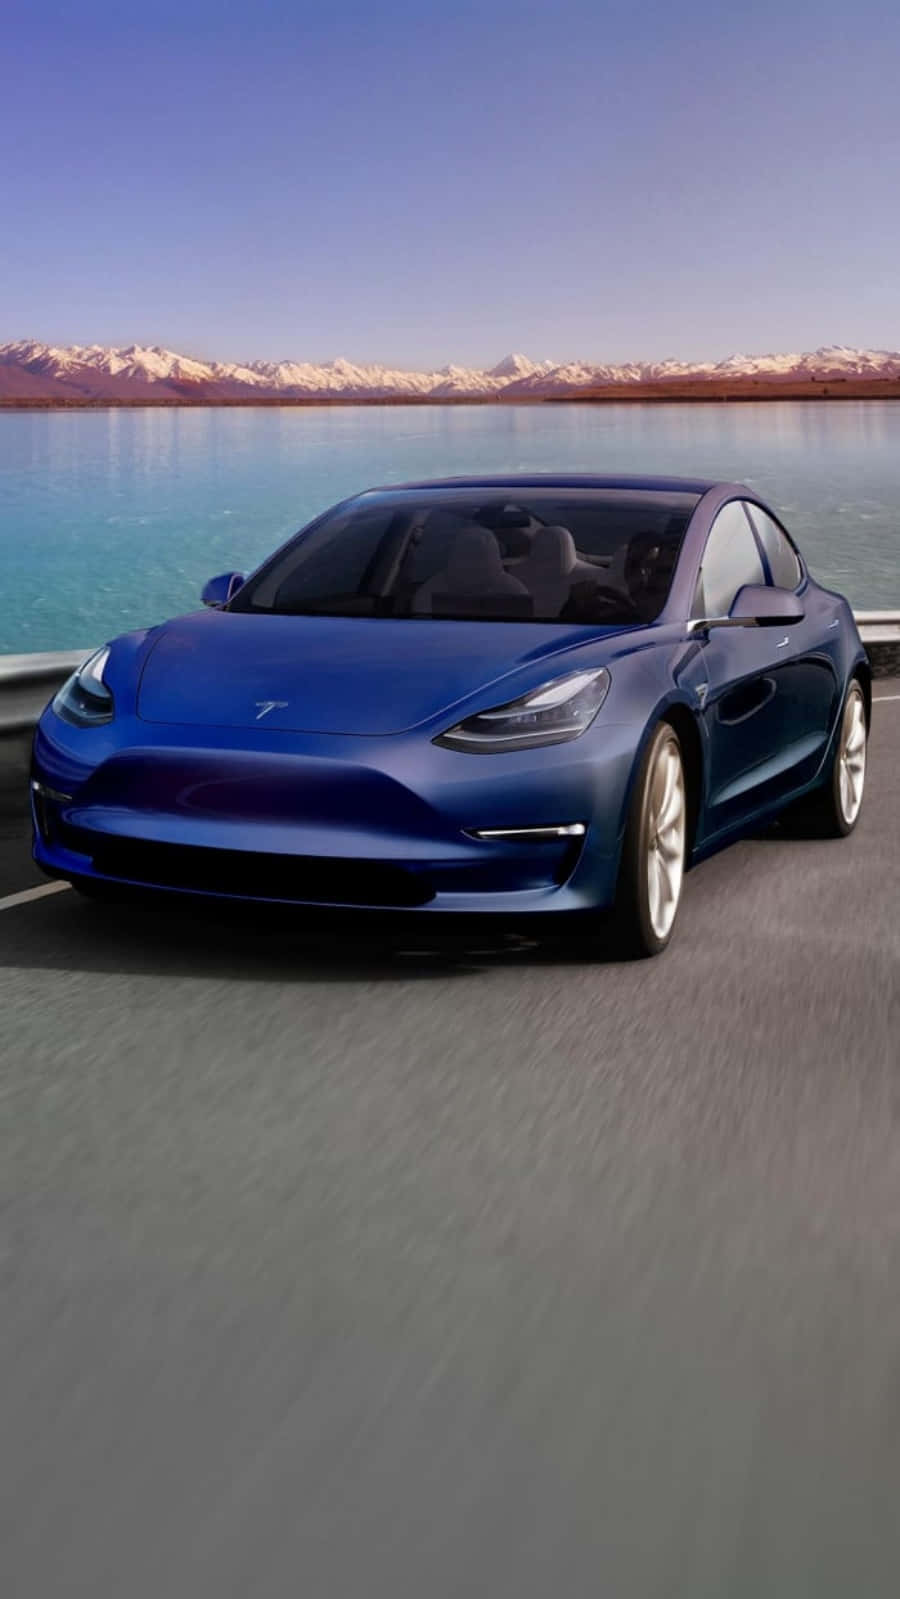 Teslamodello 3 - Tesla Modello 3 - Tesla Modello 3 - Tesla Modello 3 - Tesla Modello 3